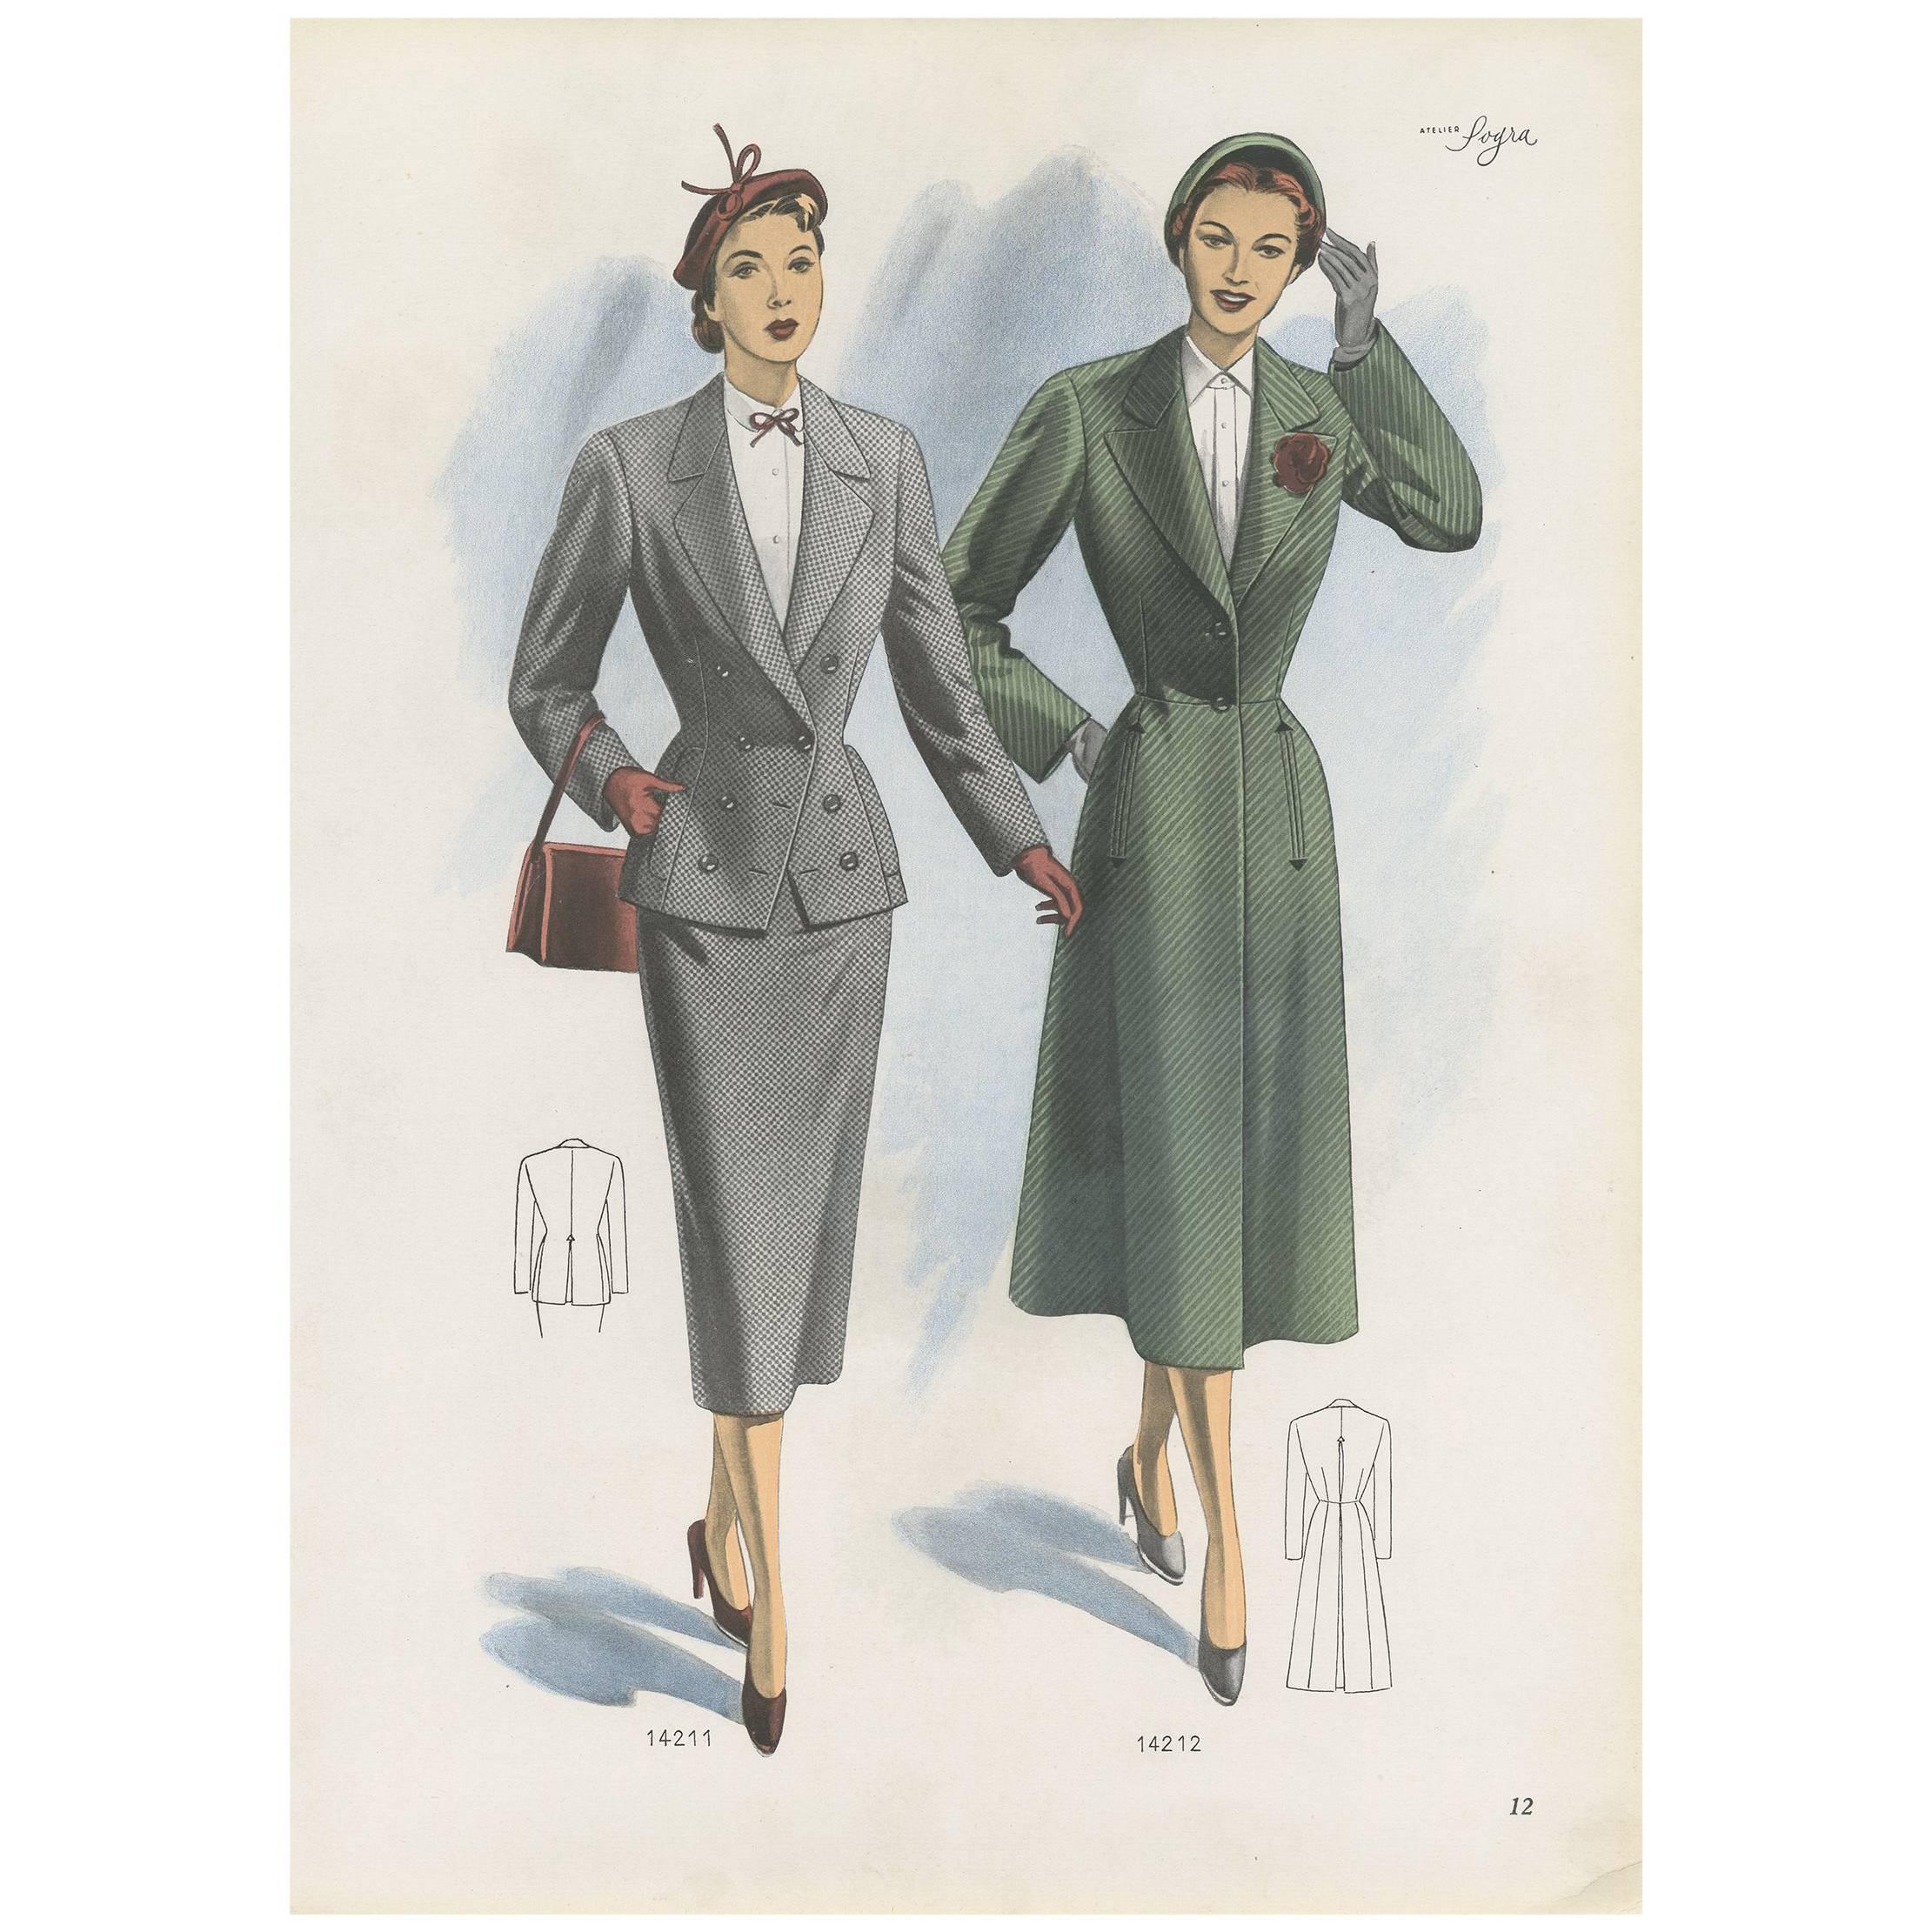 Affiche de mode vintage « pp. 14211 » publiée dans Ladies Styles, 1951